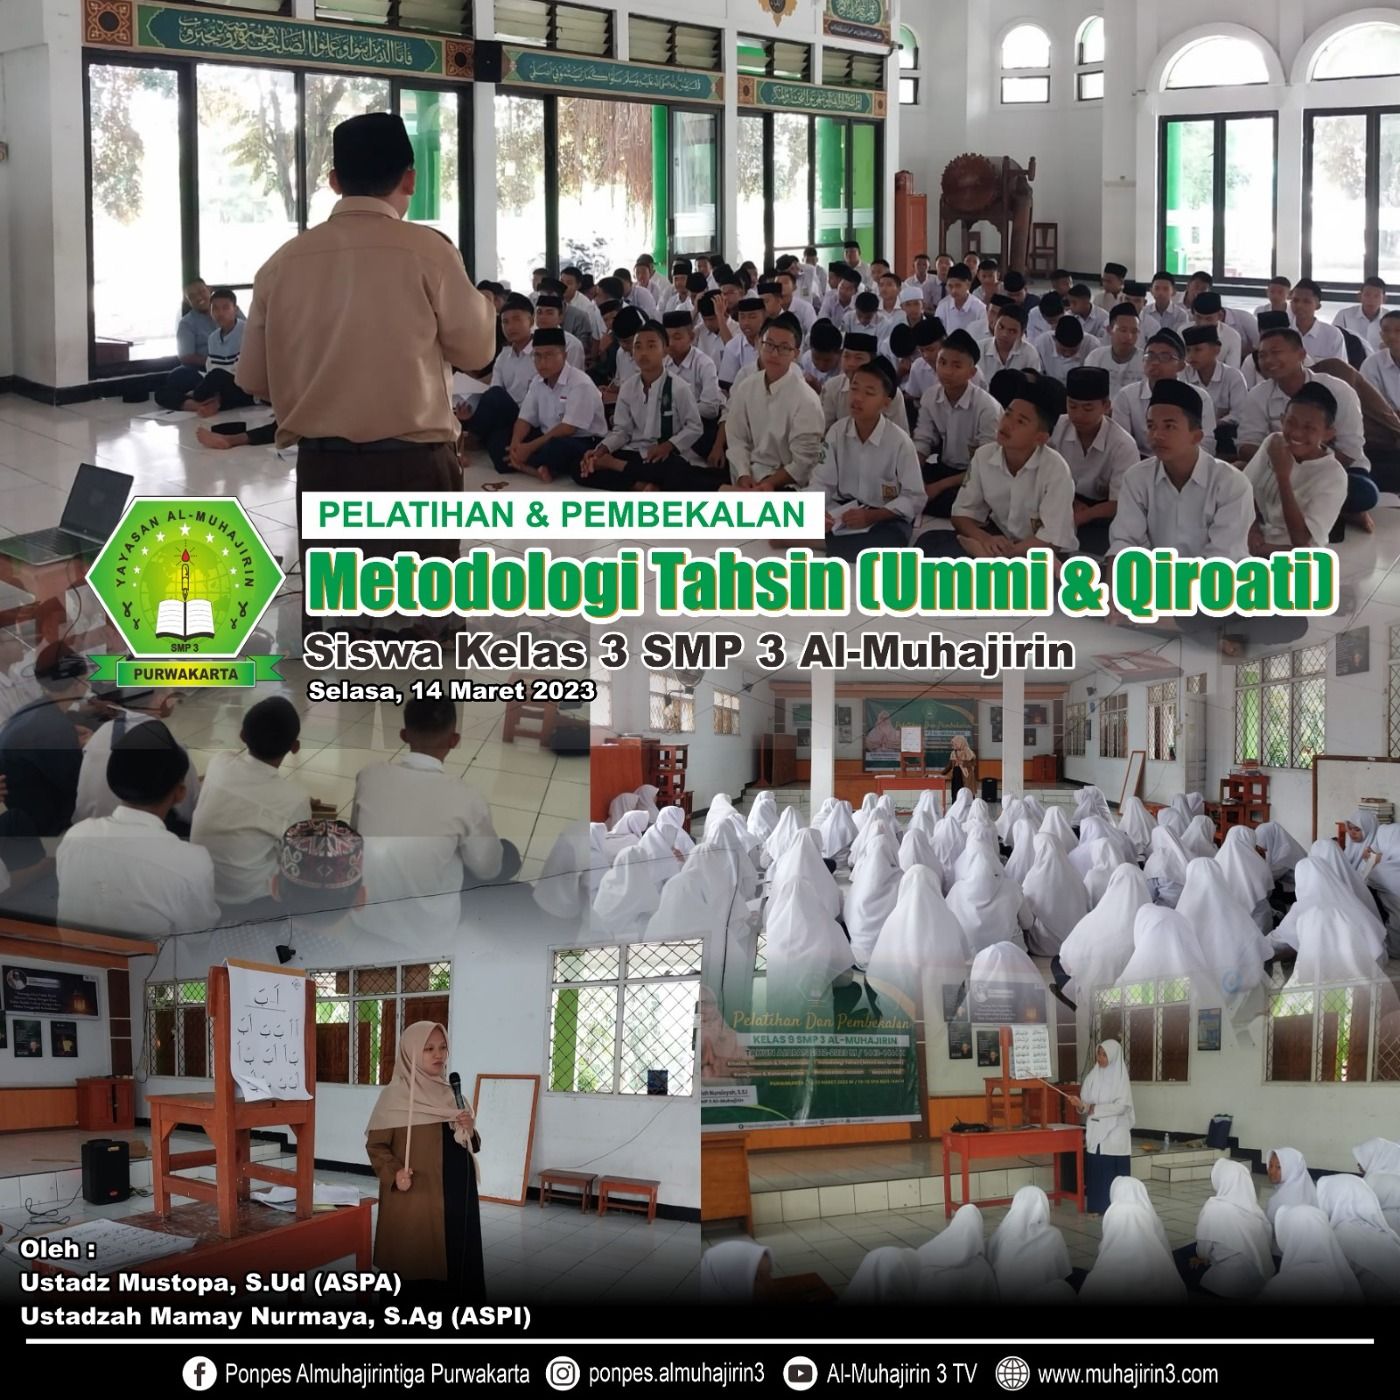 Pelatihan & Pembekalan Tahsin Al-Qur’an Metode Ummi & Qiro’ati Pondok Pesantren Al-Muhajirin 3 Tahun 2023